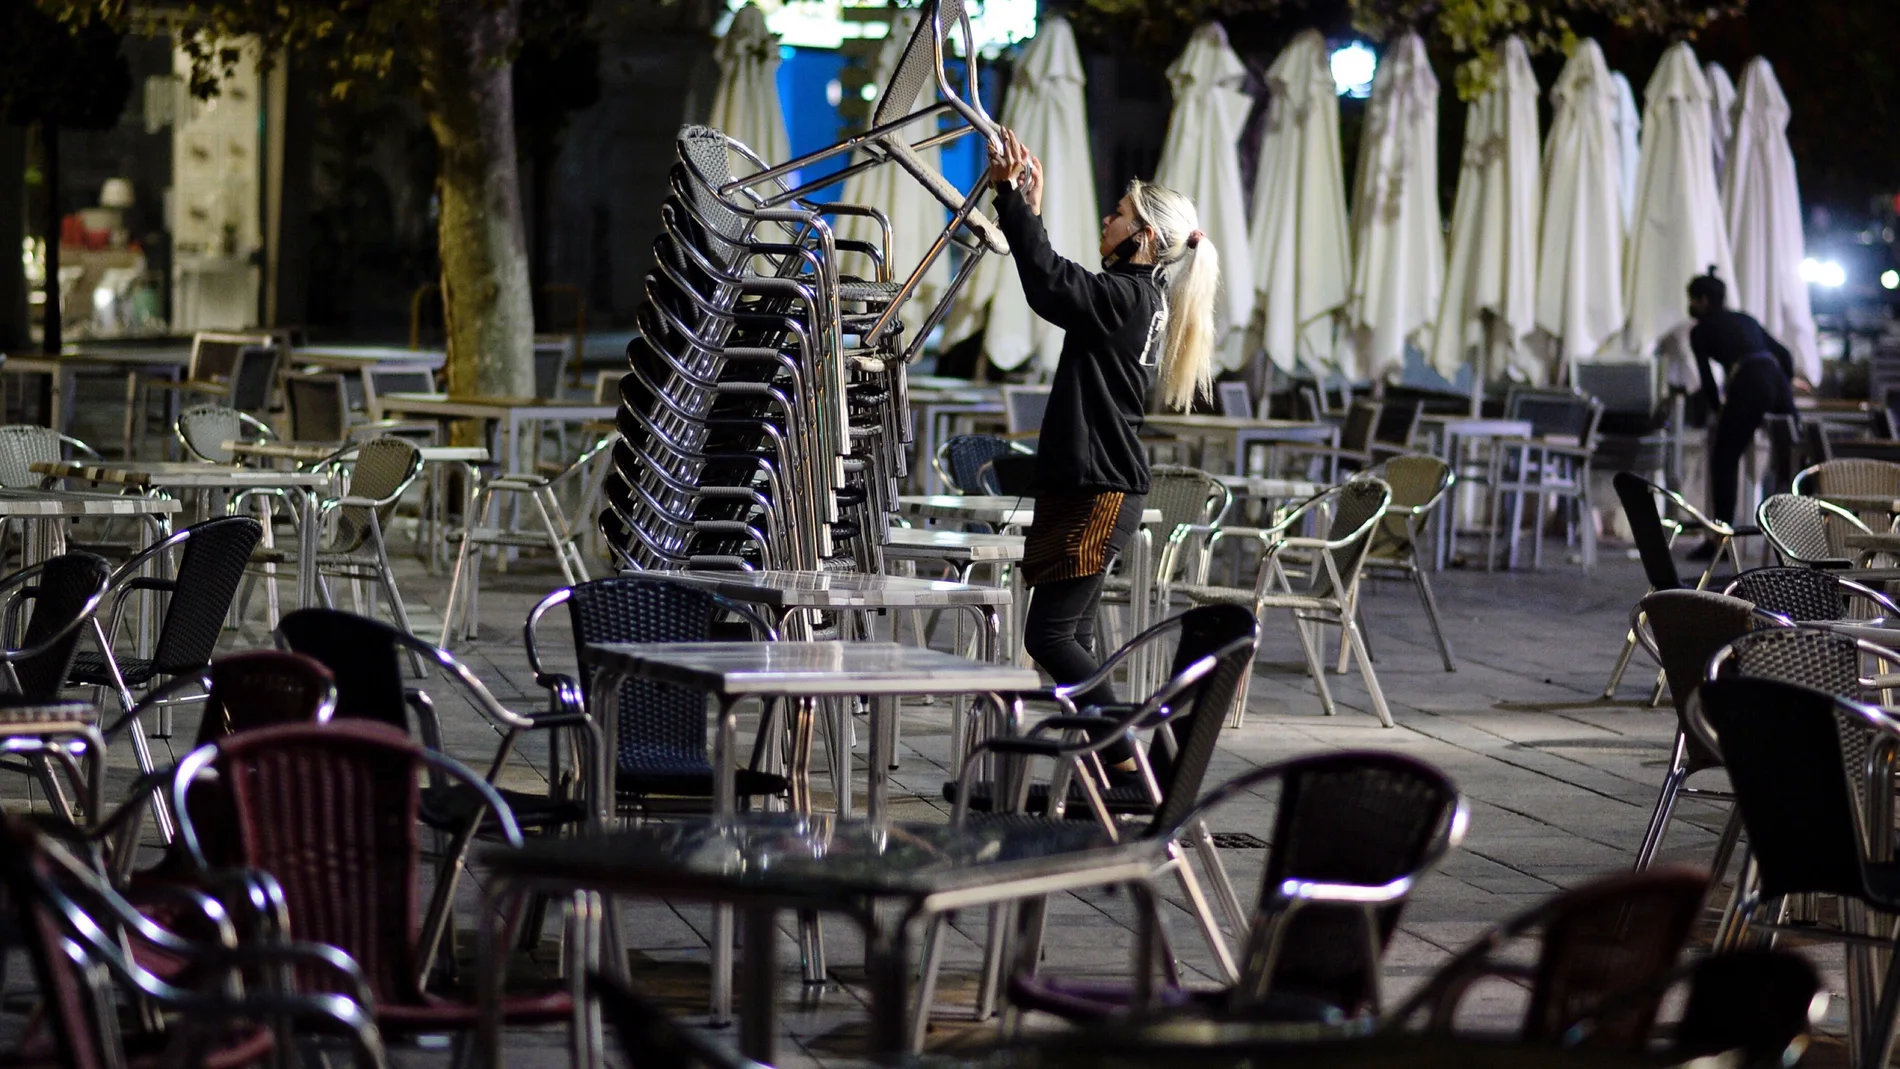 Una camarera recoge la terraza de un bar en Valladolid momentos antes del inicio del toque de queda impuesto por la Junta de Castilla y León debido al alto número de contagios de coronavirus en la Comunidad. EFE/NACHO GALLEGO